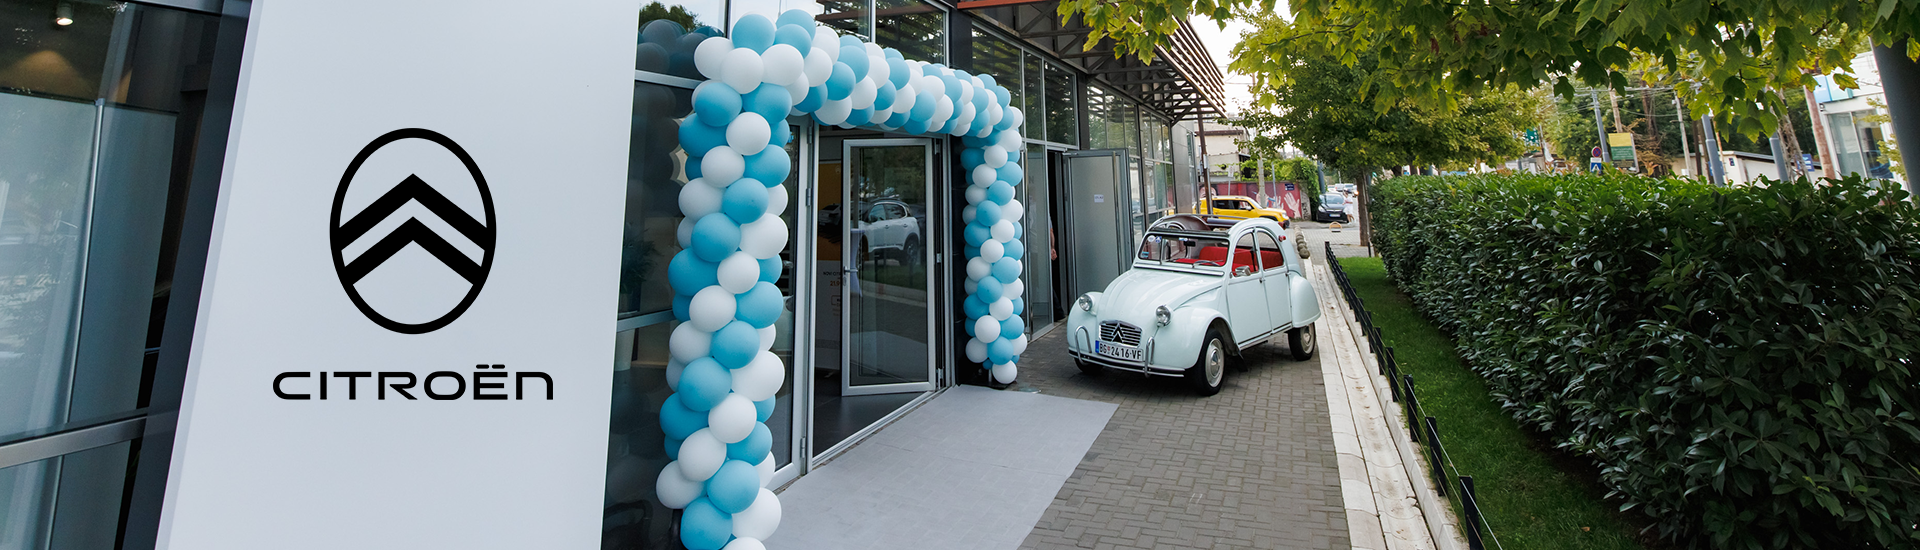 Svečano otvaranje novog Citroën salona